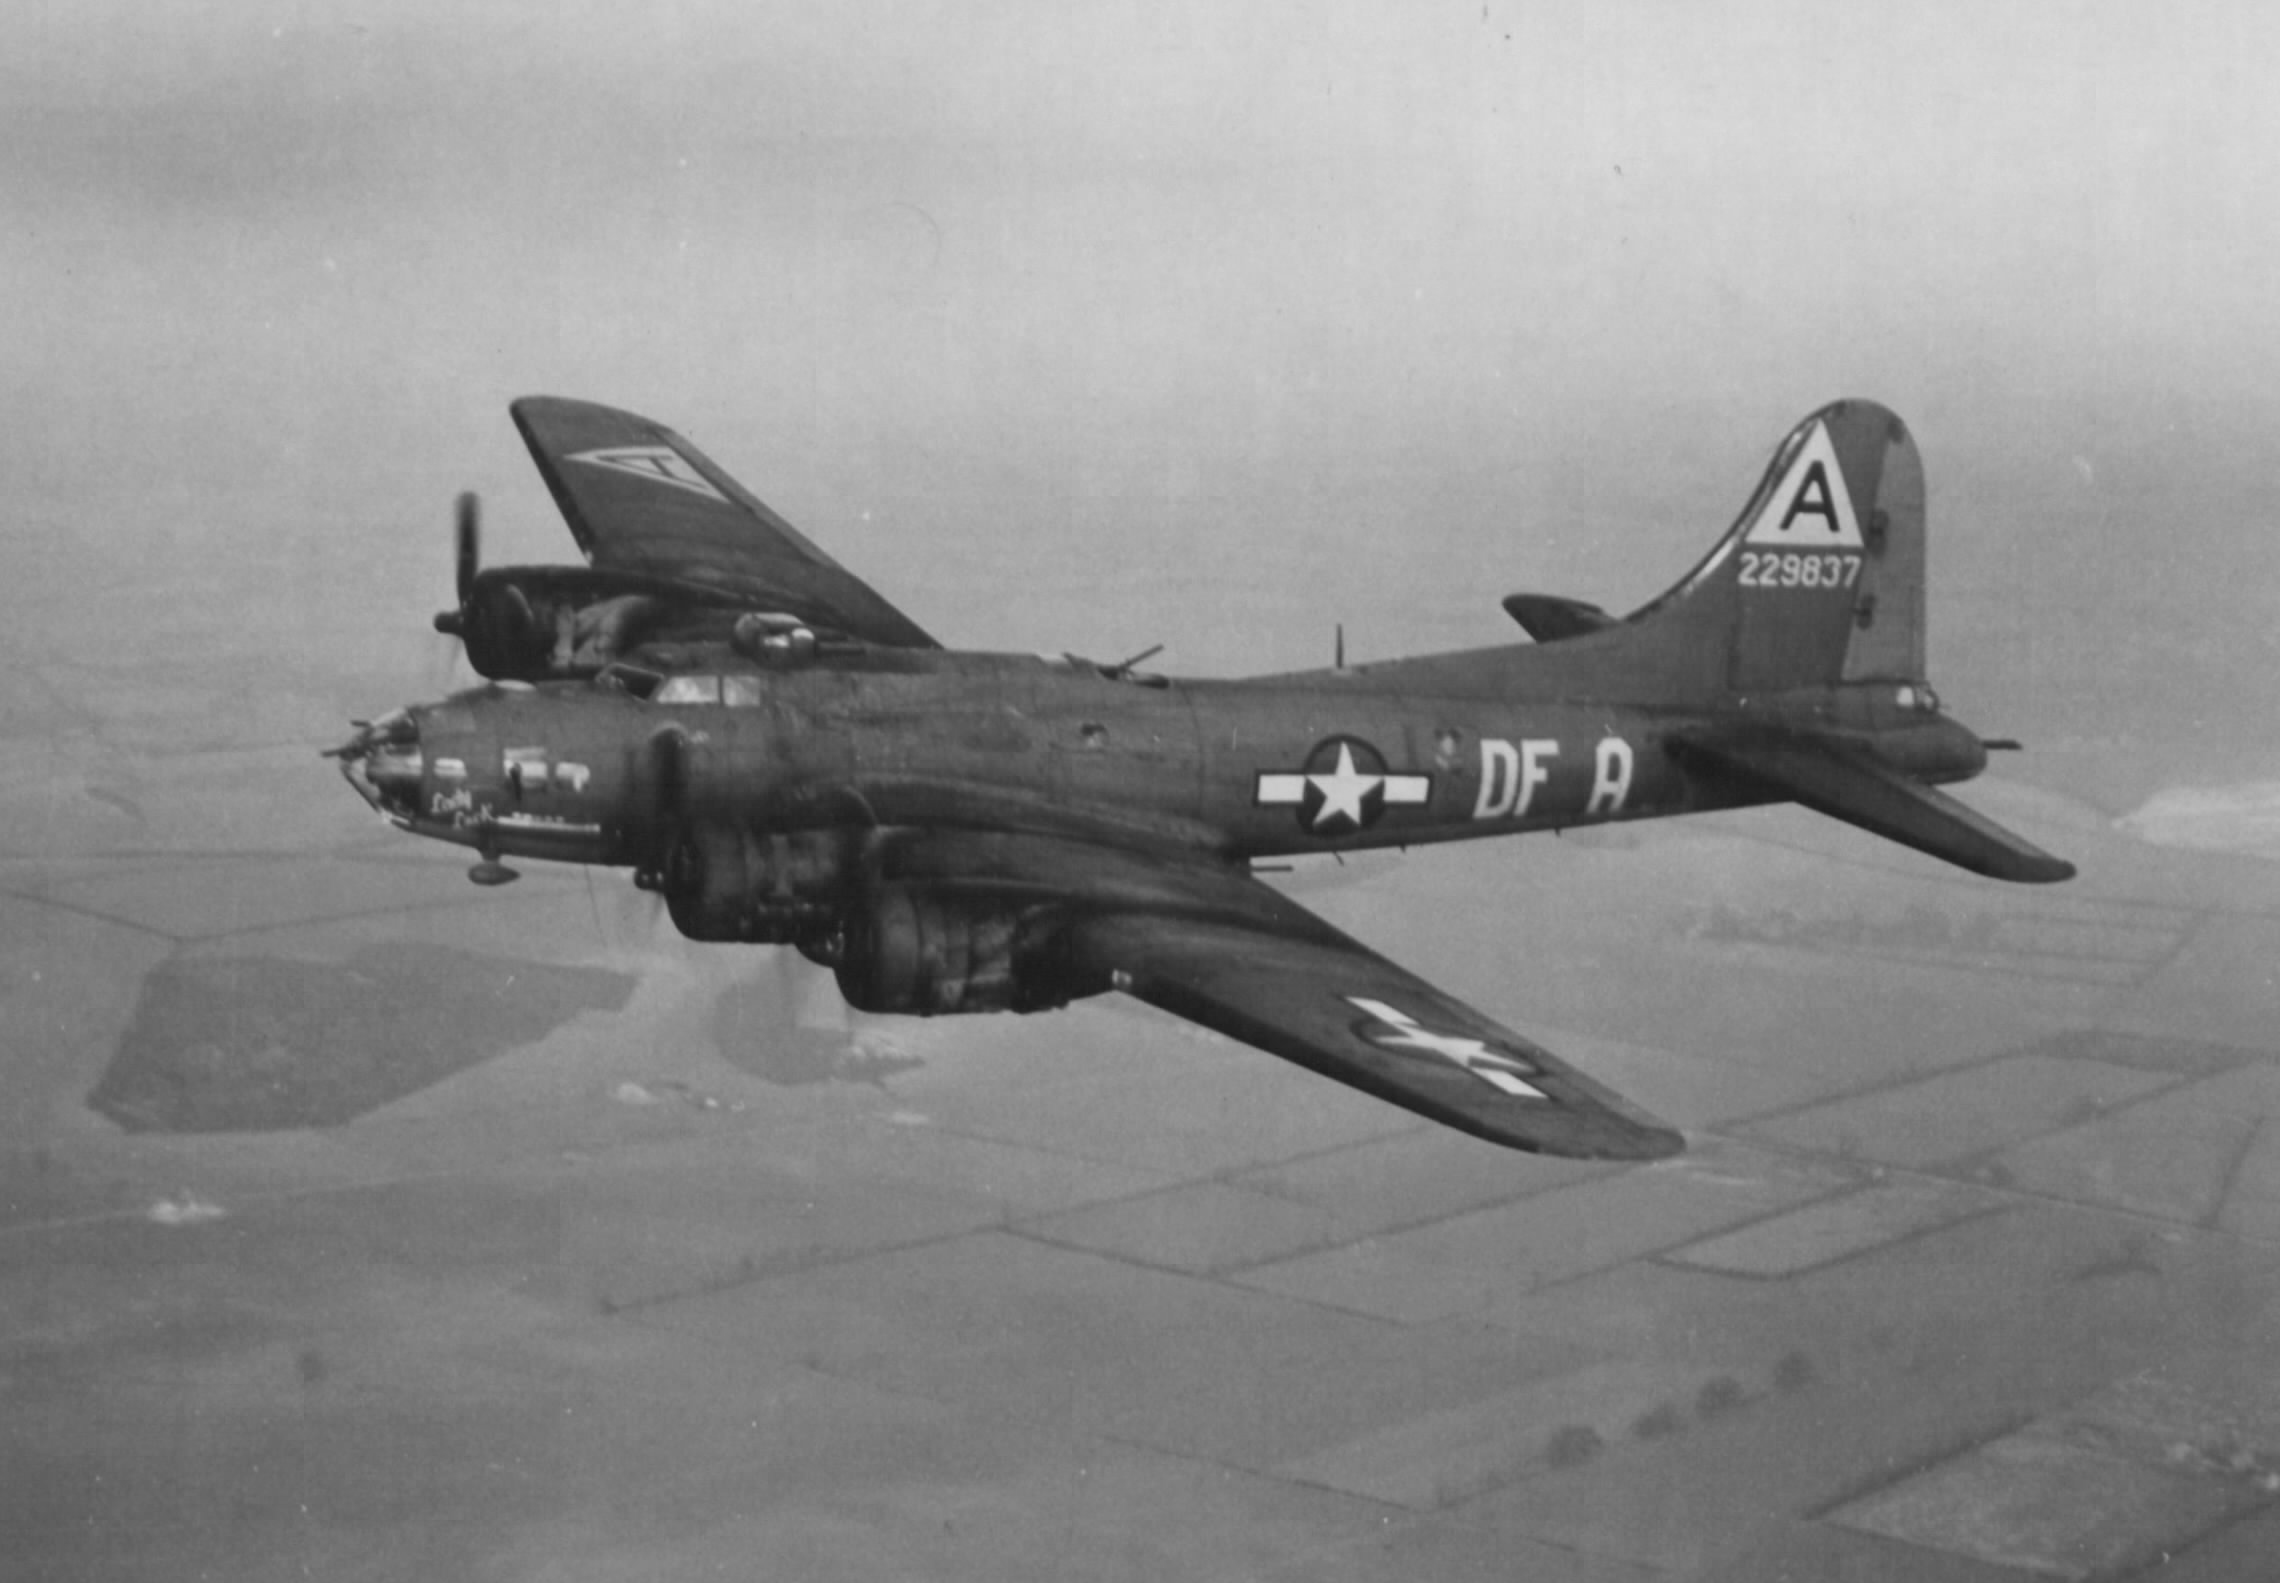 B-17 #42-29837 / Lady Luck